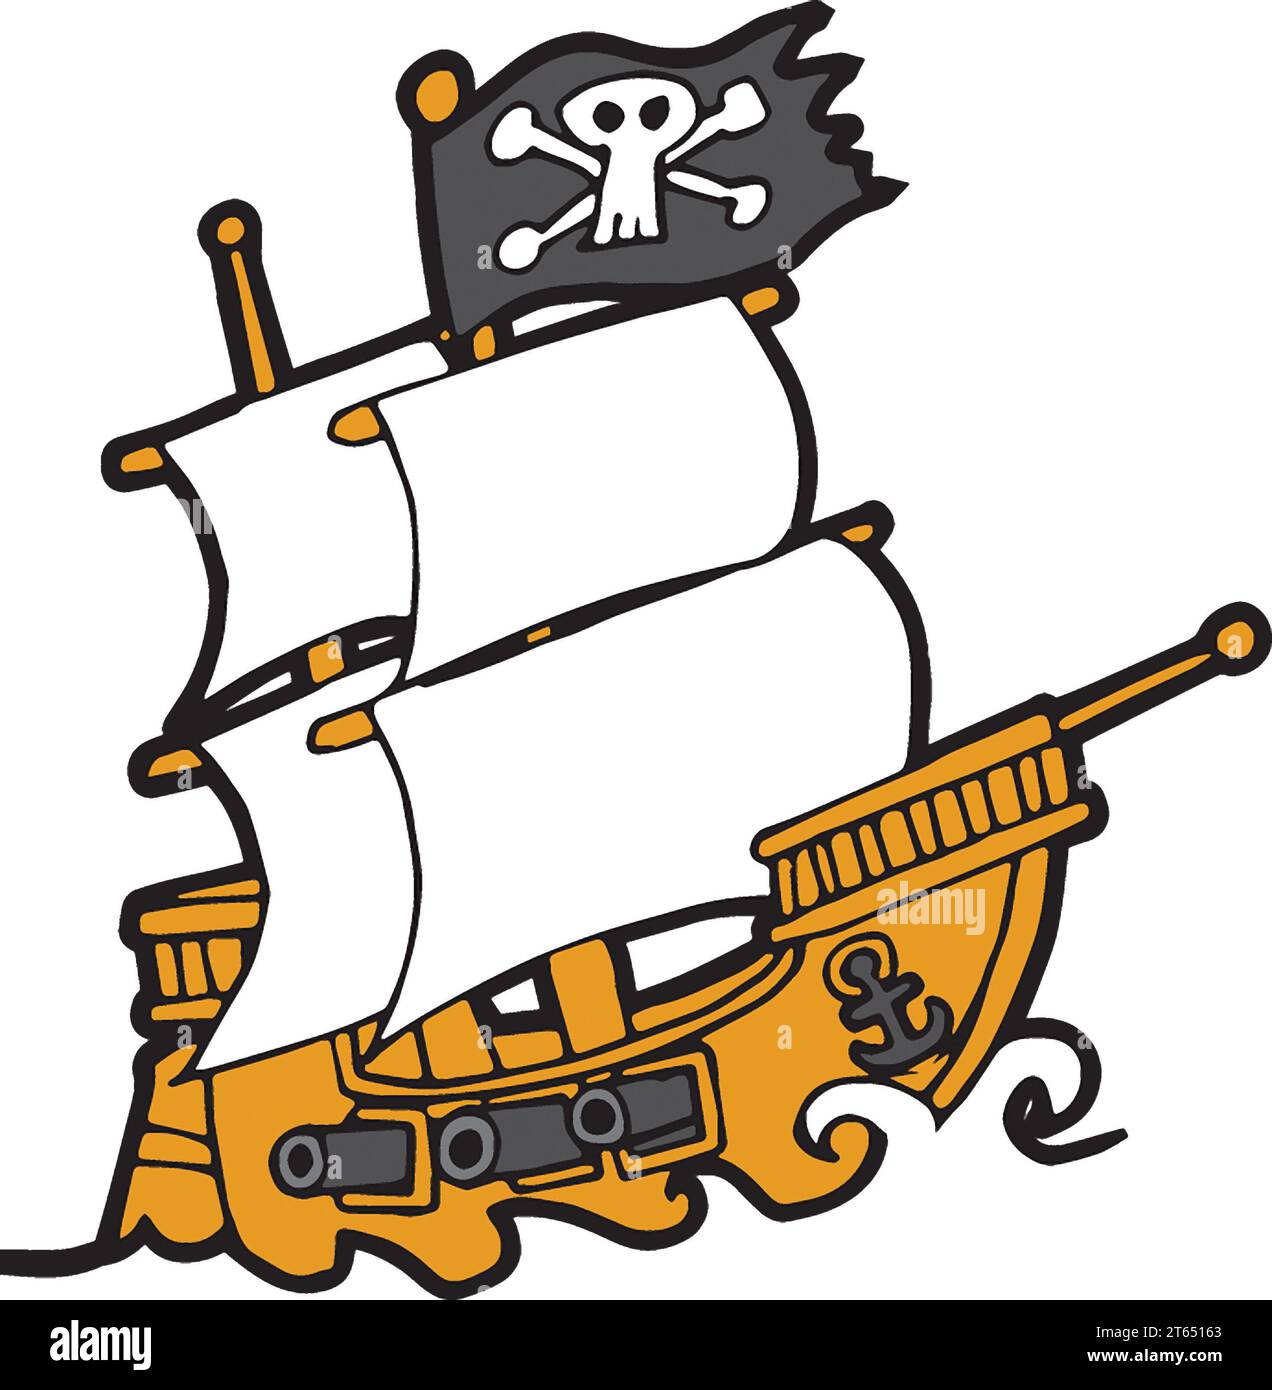 Art de bateau pirate en mer, voiles déployées, ports de canon ouverts, faisant voler le crâne Jolly Roger & crossbones drapeau, costume éducatif, livre, logo concept piratage. Banque D'Images